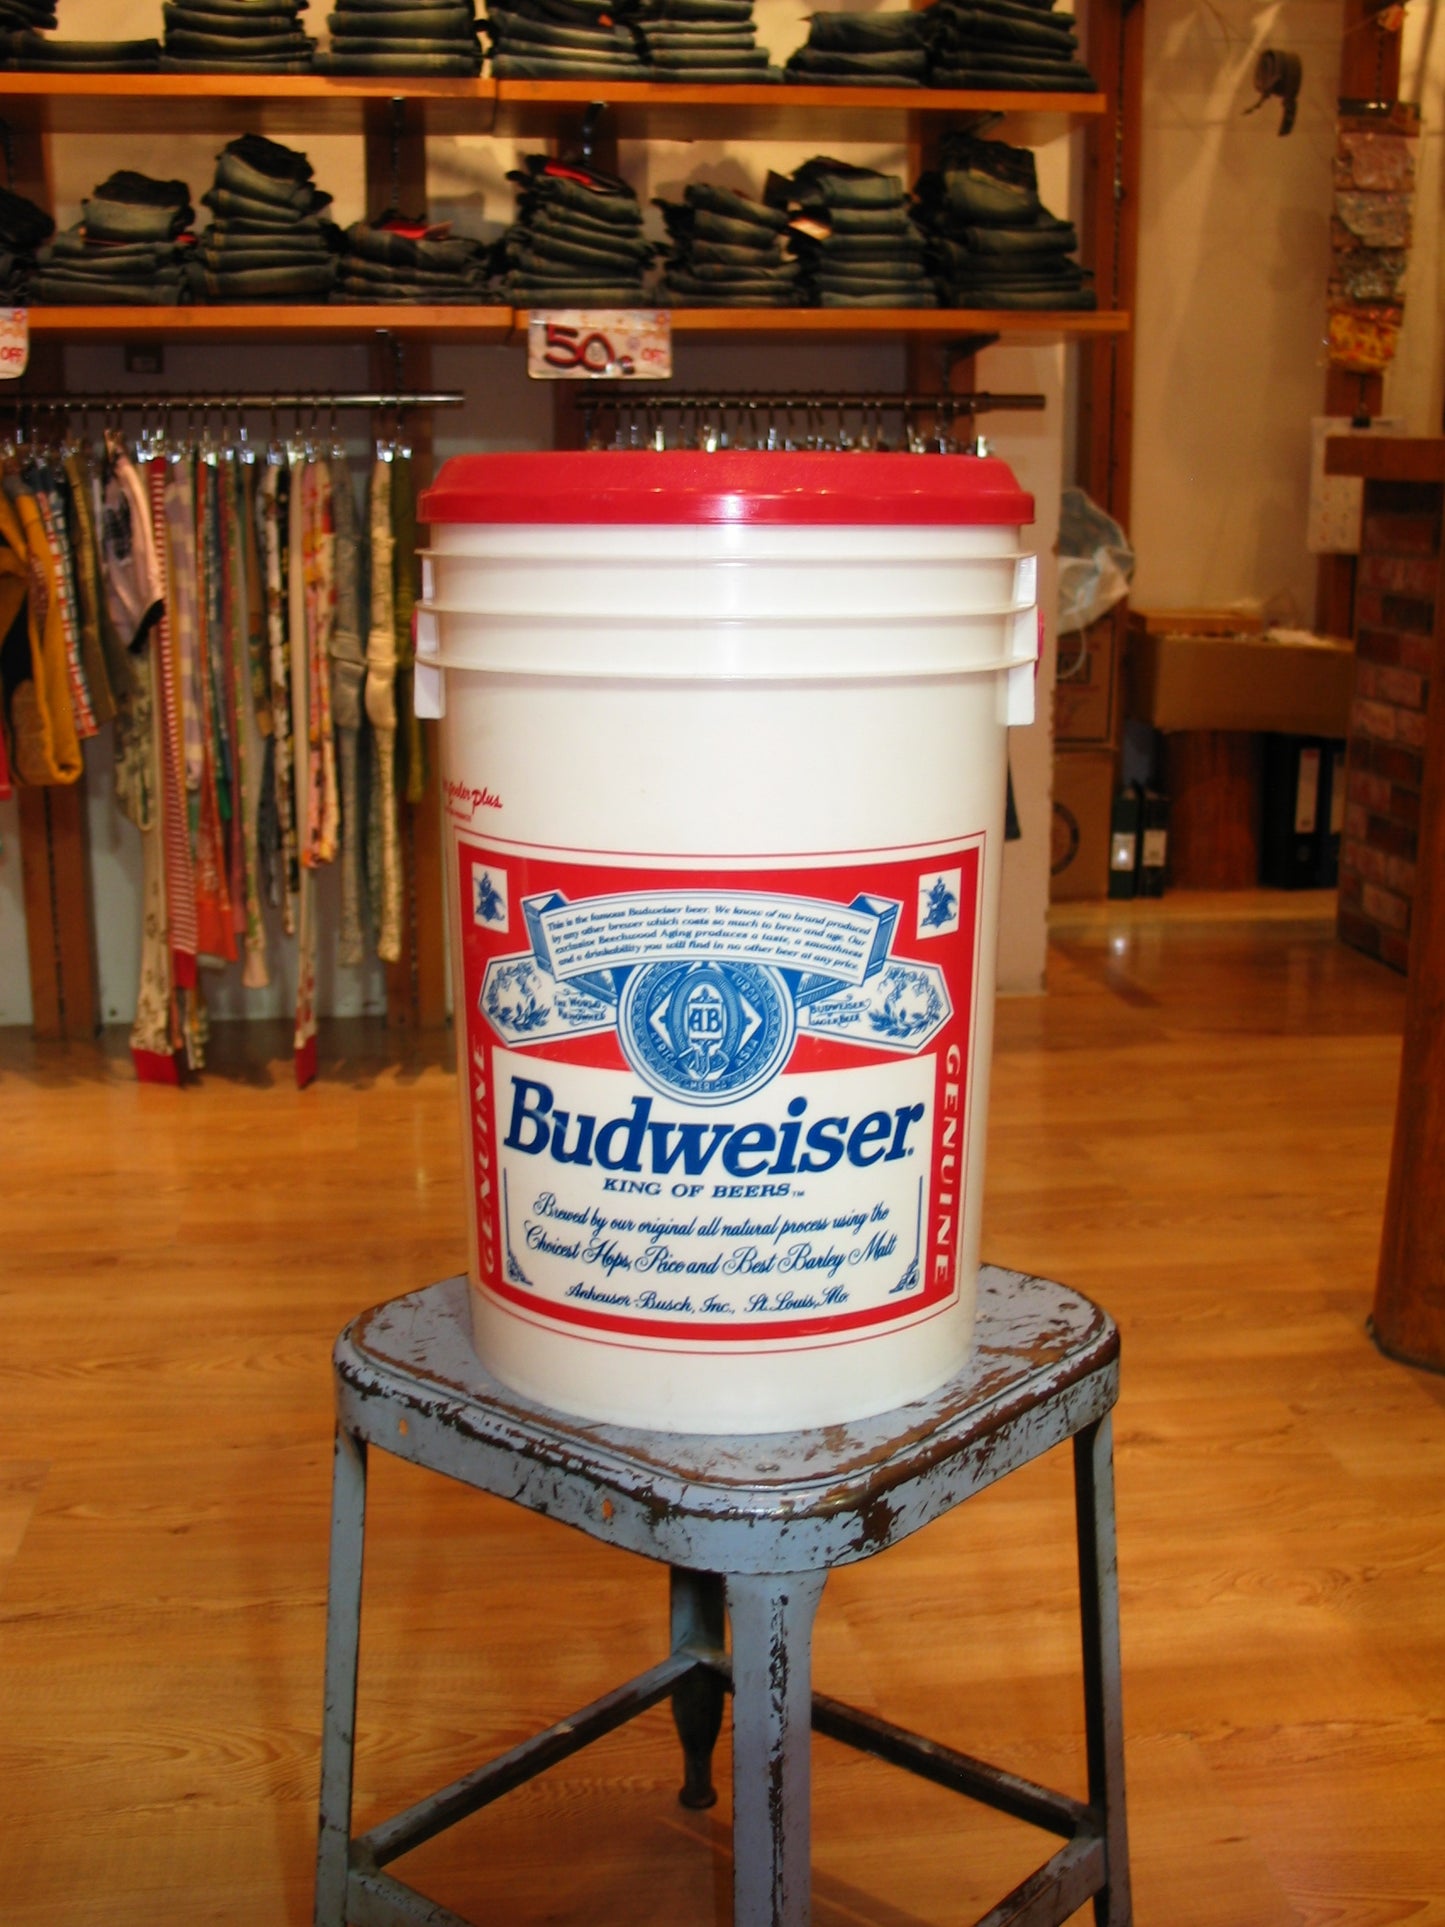 U.S.A.Vintage Budweiser Beer Coolers美國百威啤酒凍筒